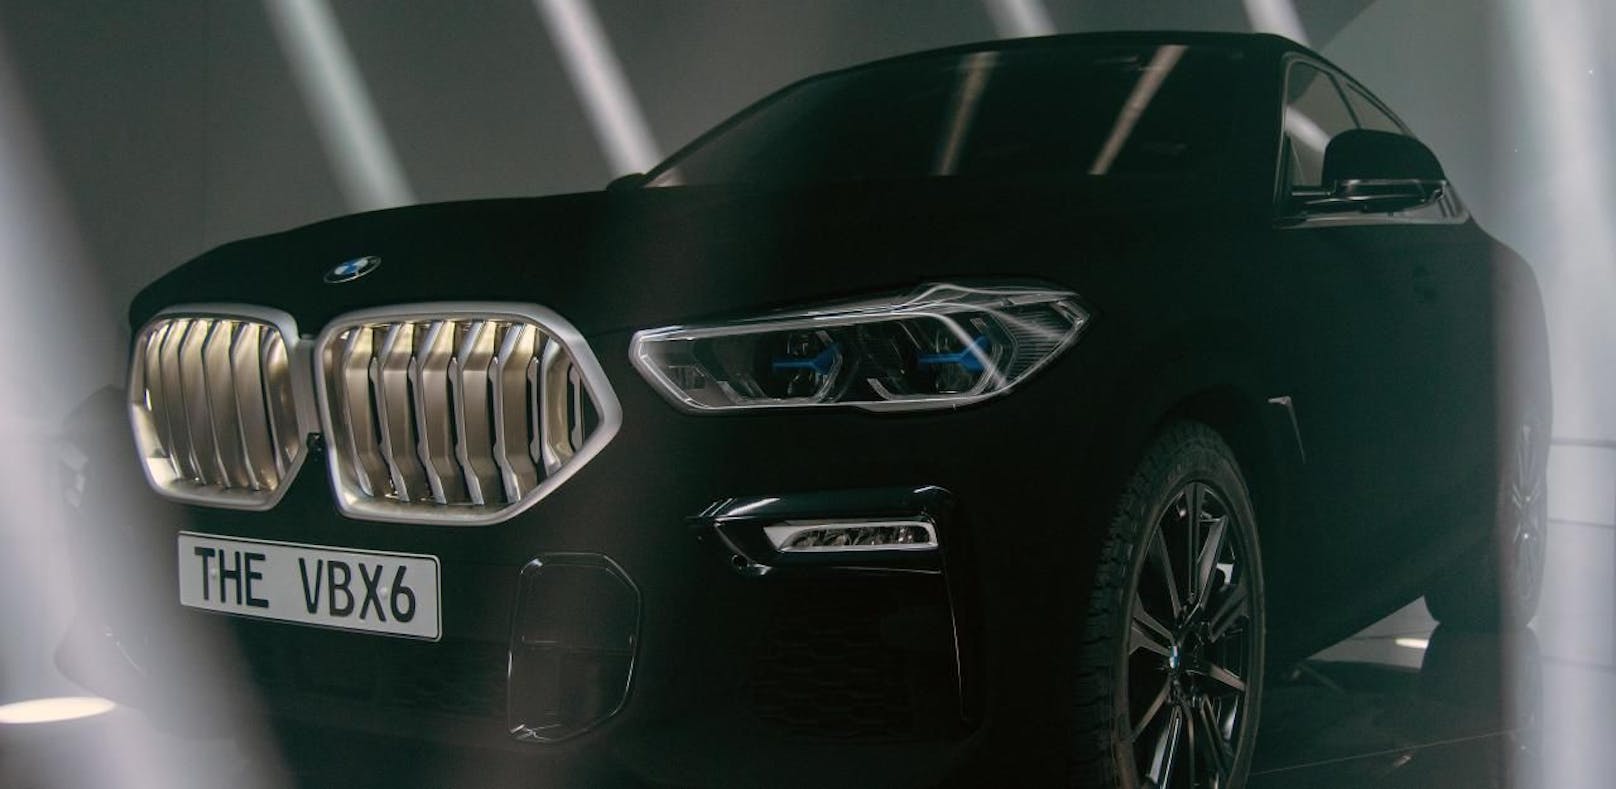 Kein BMWs neues Logo für Autos (2020)